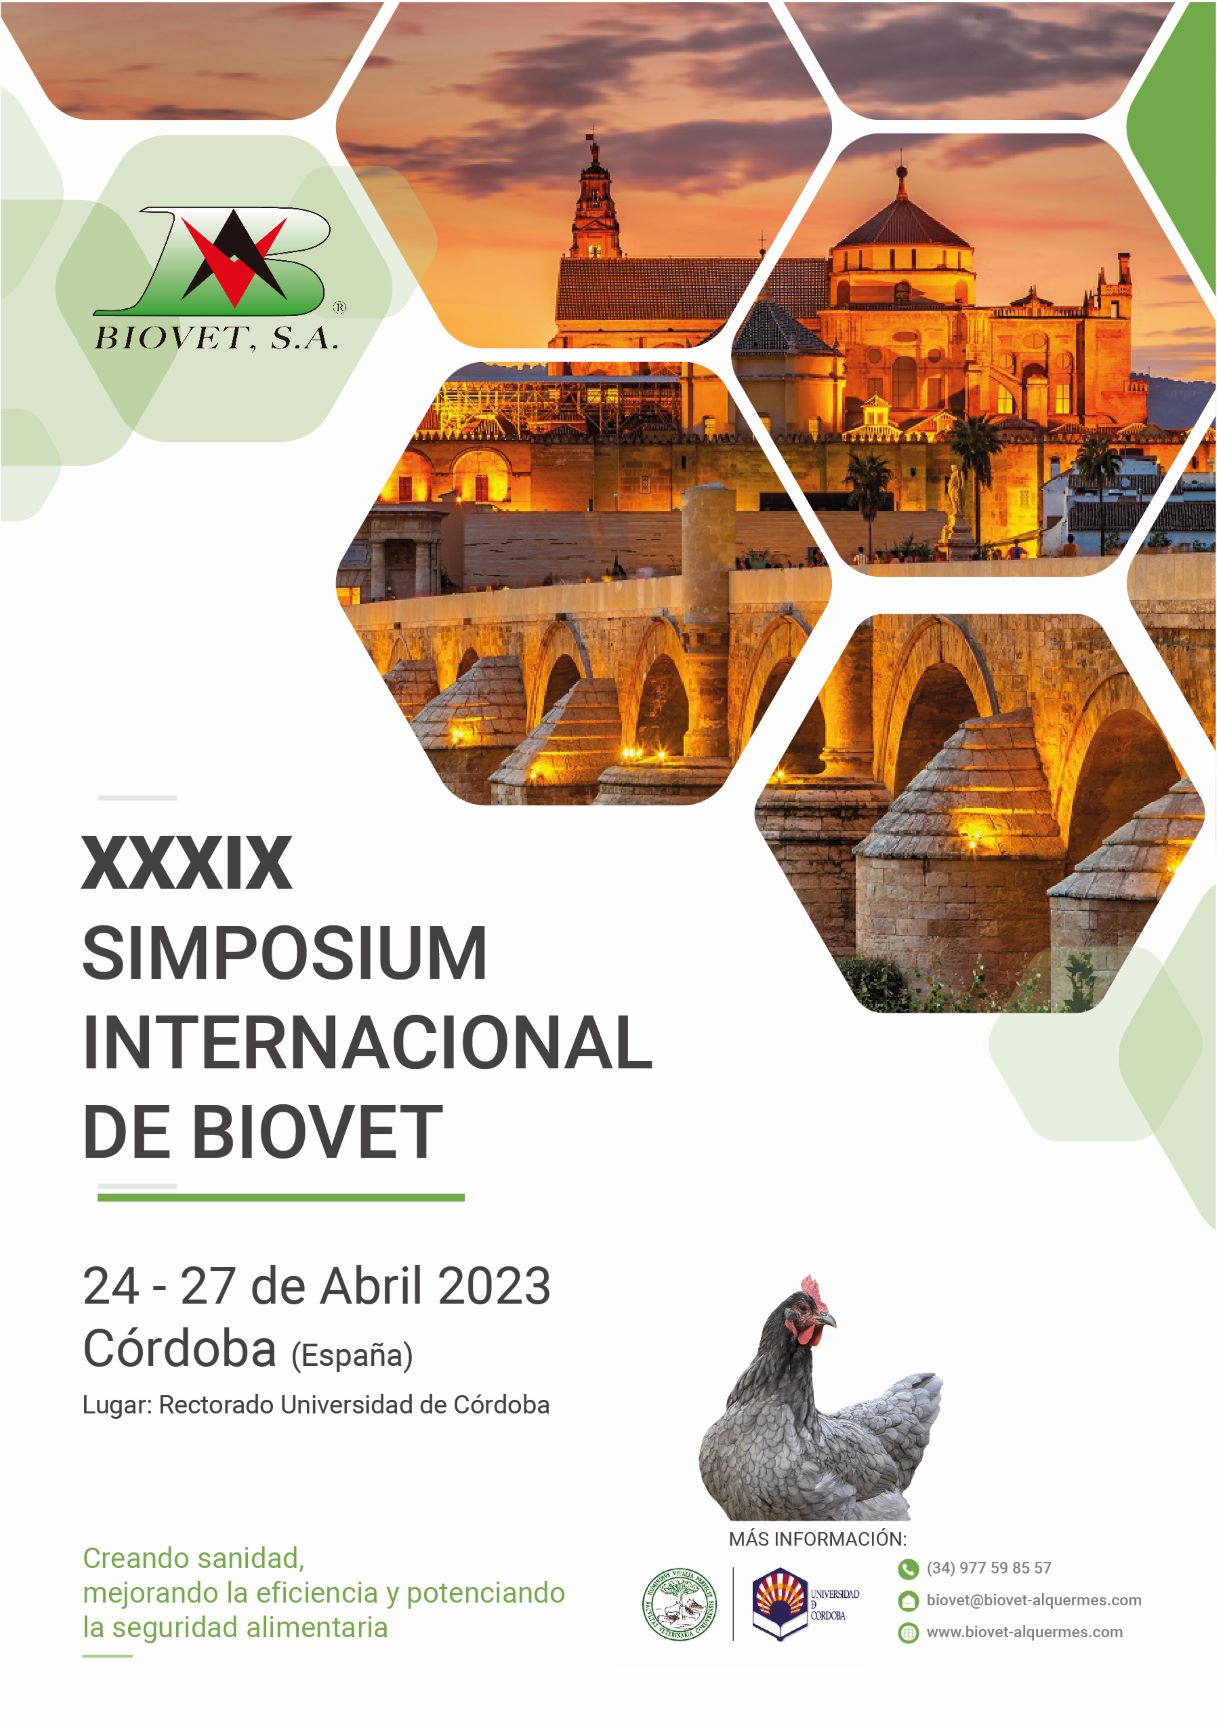 El XXXIX Simposium Internacional Biovet se organizará en Córdoba